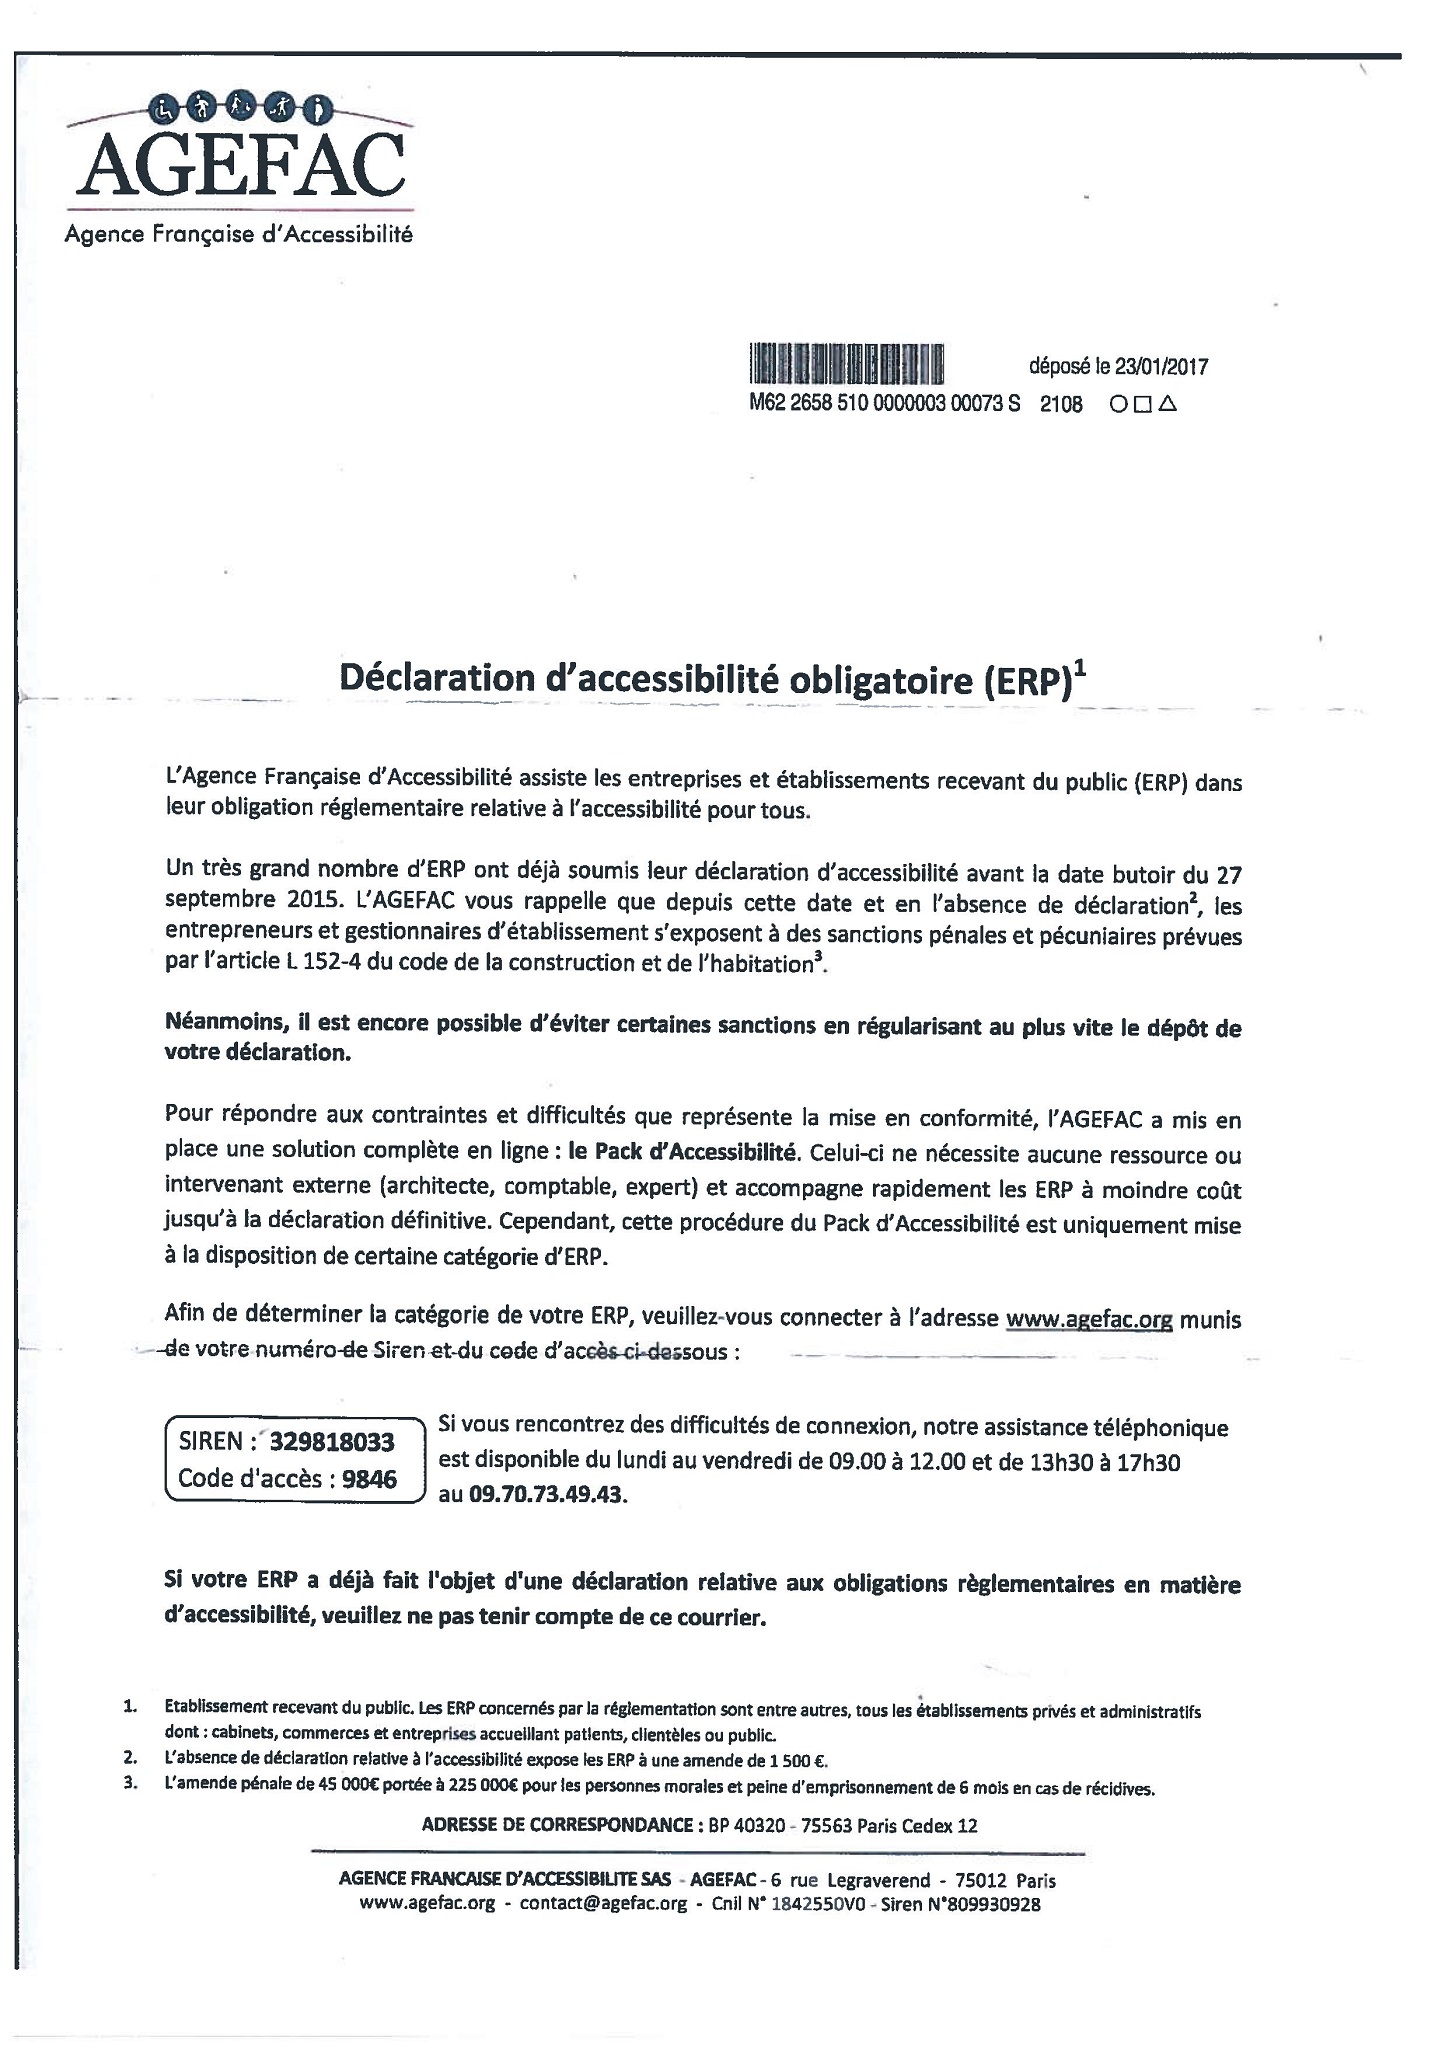 AGEFAC - Courrier publicitaire - Plainte fondée - JDP